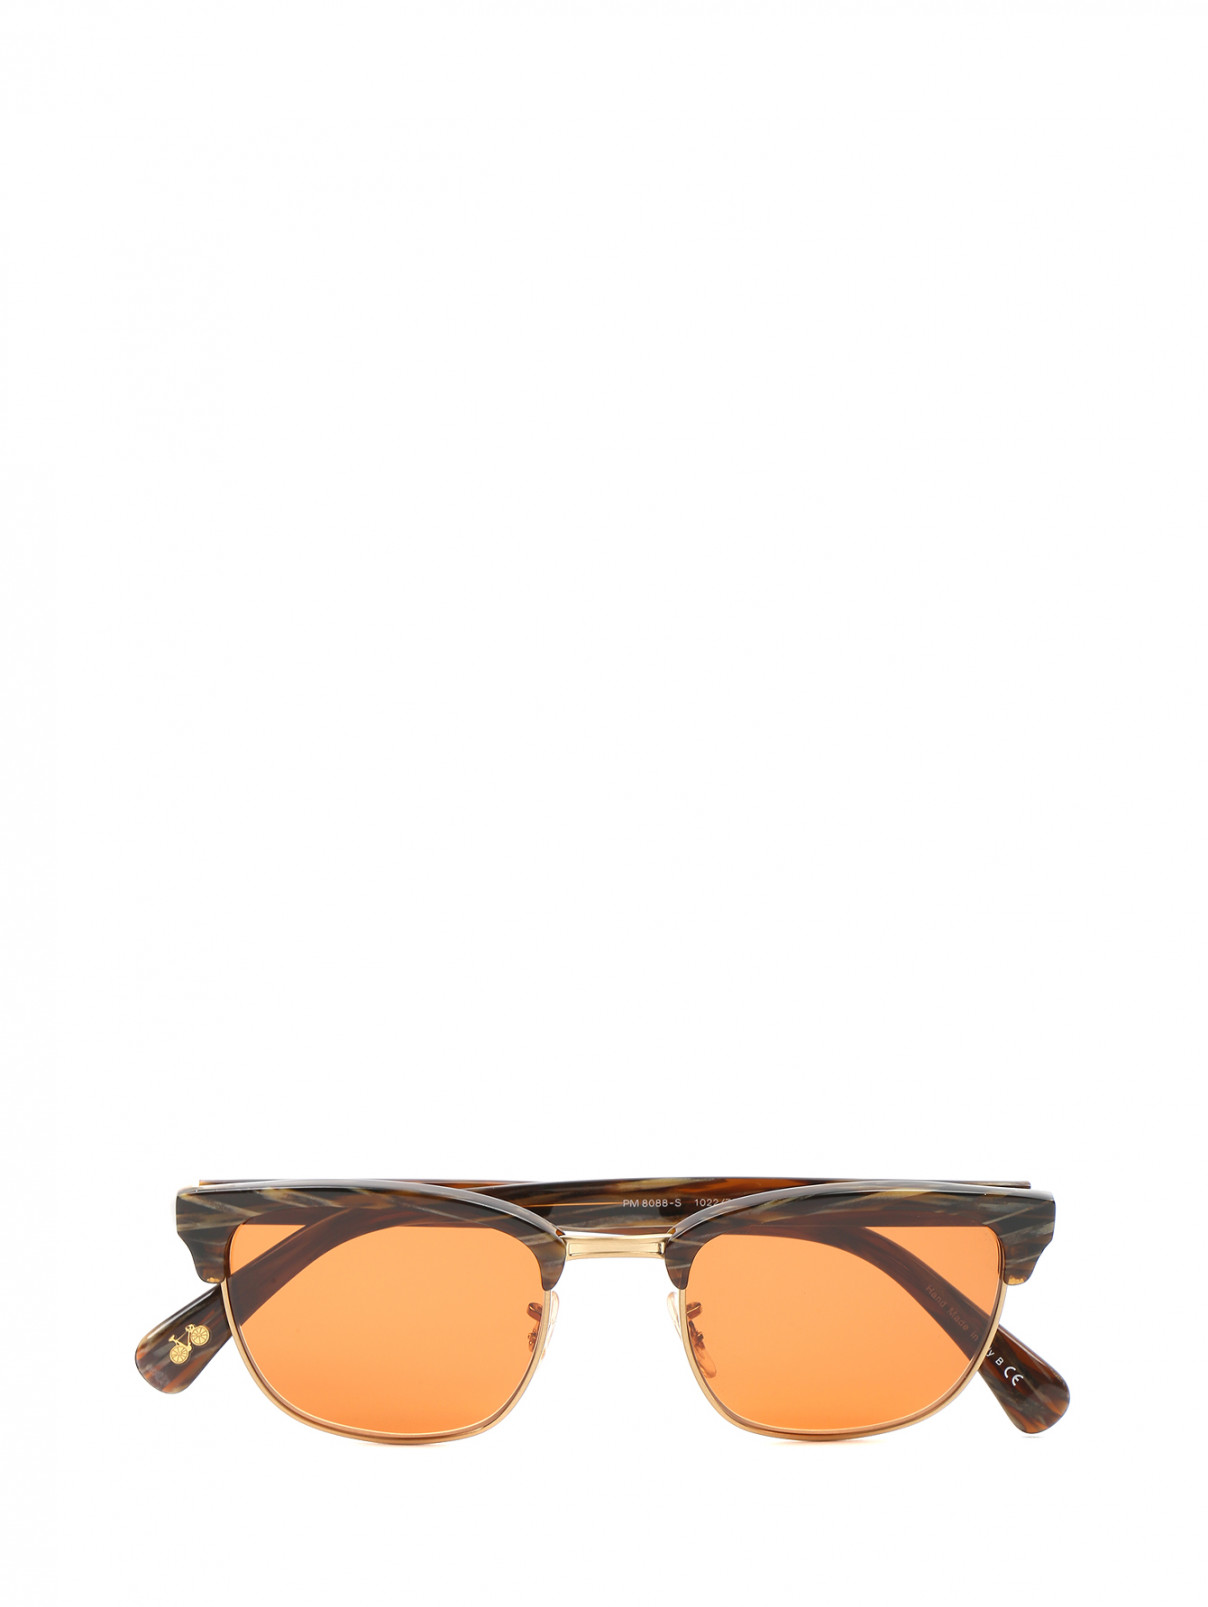 Cолнцезащитные очки с узором Paul Smith  –  Общий вид  – Цвет:  Узор